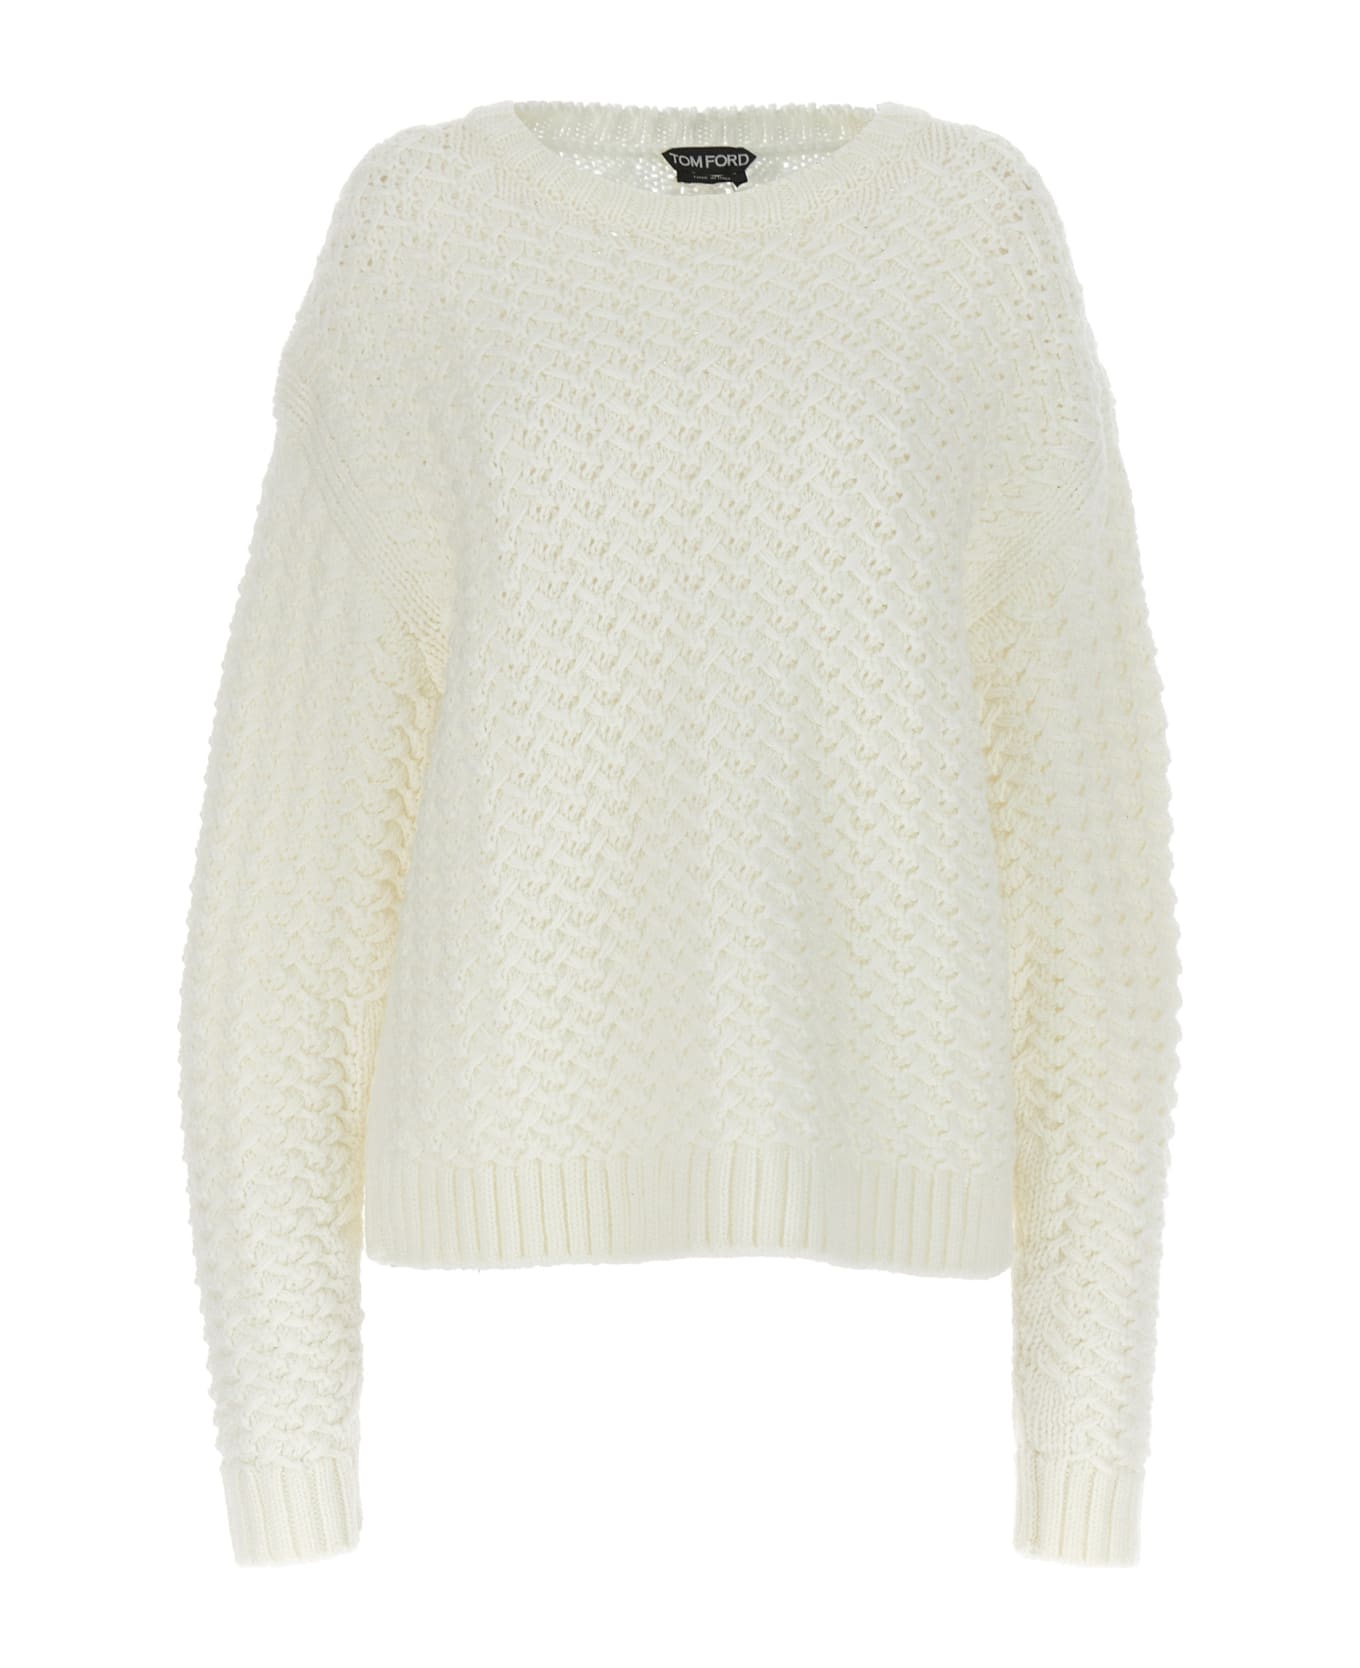 Tom Ford Wool Sweater - White ニットウェア